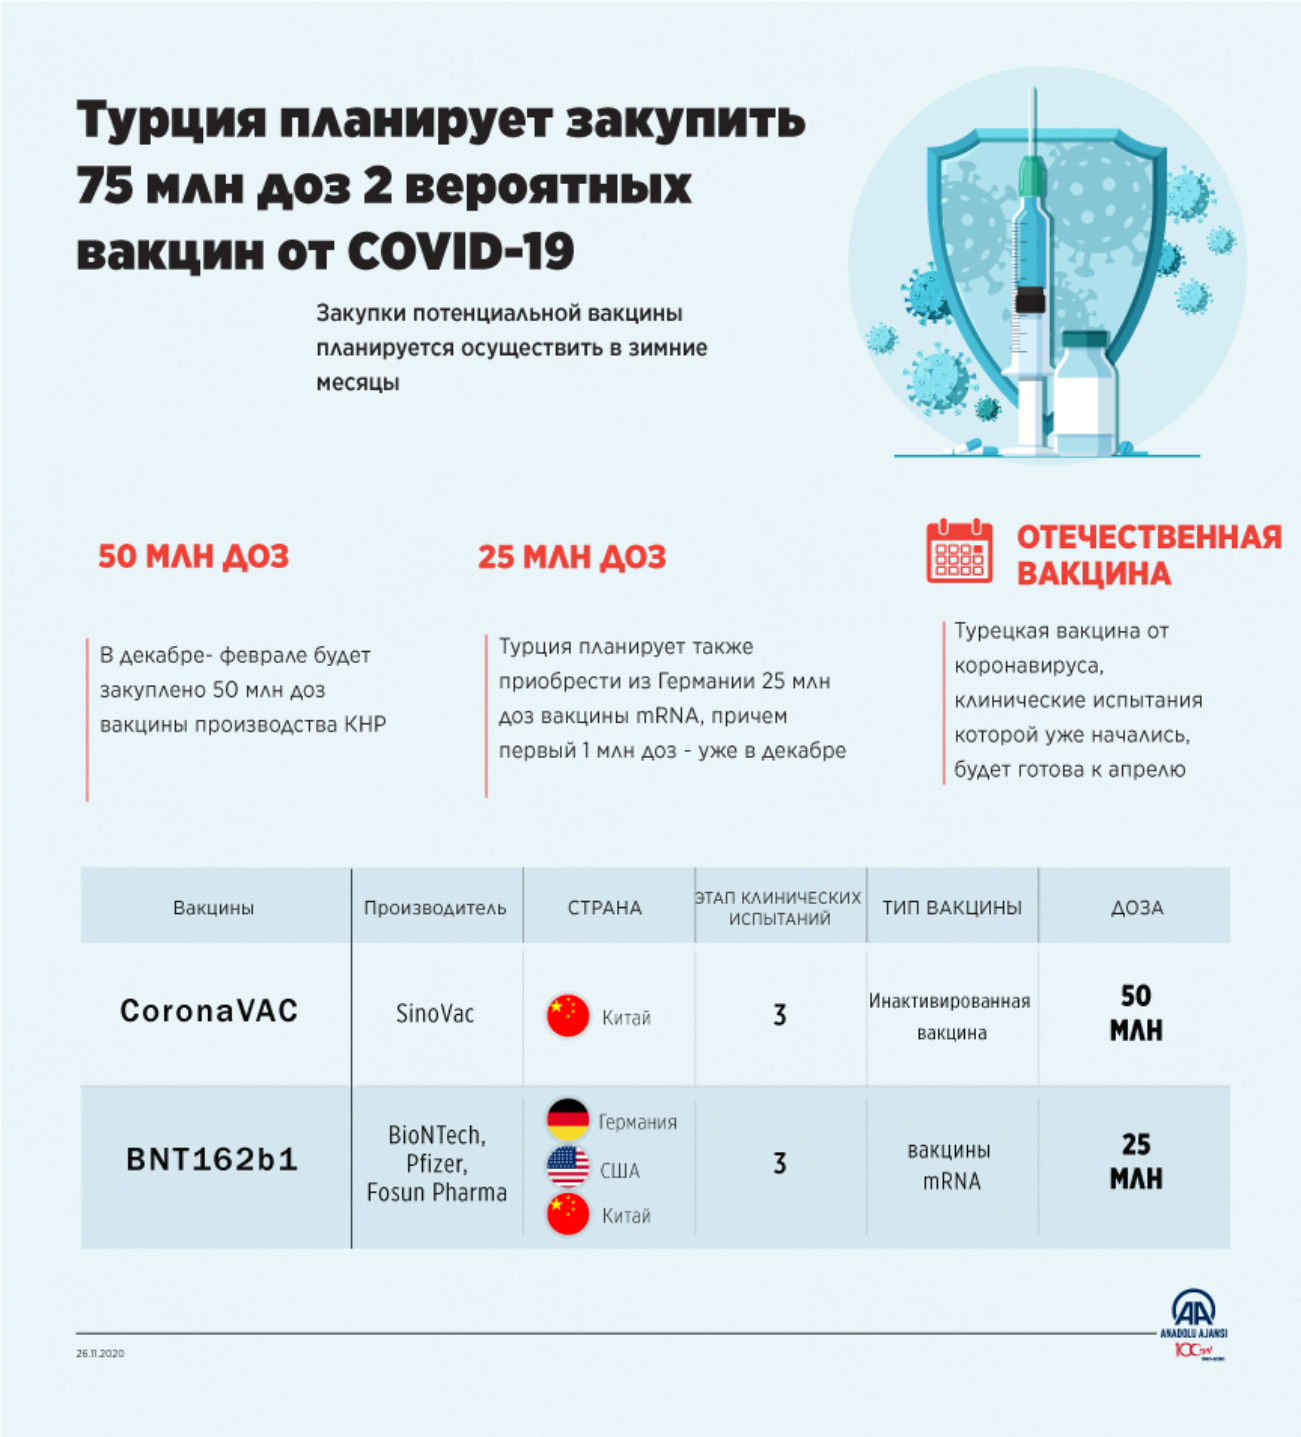 Турция планирует закупить 75 млн доз 2 вероятных вакцин от COVID-19 